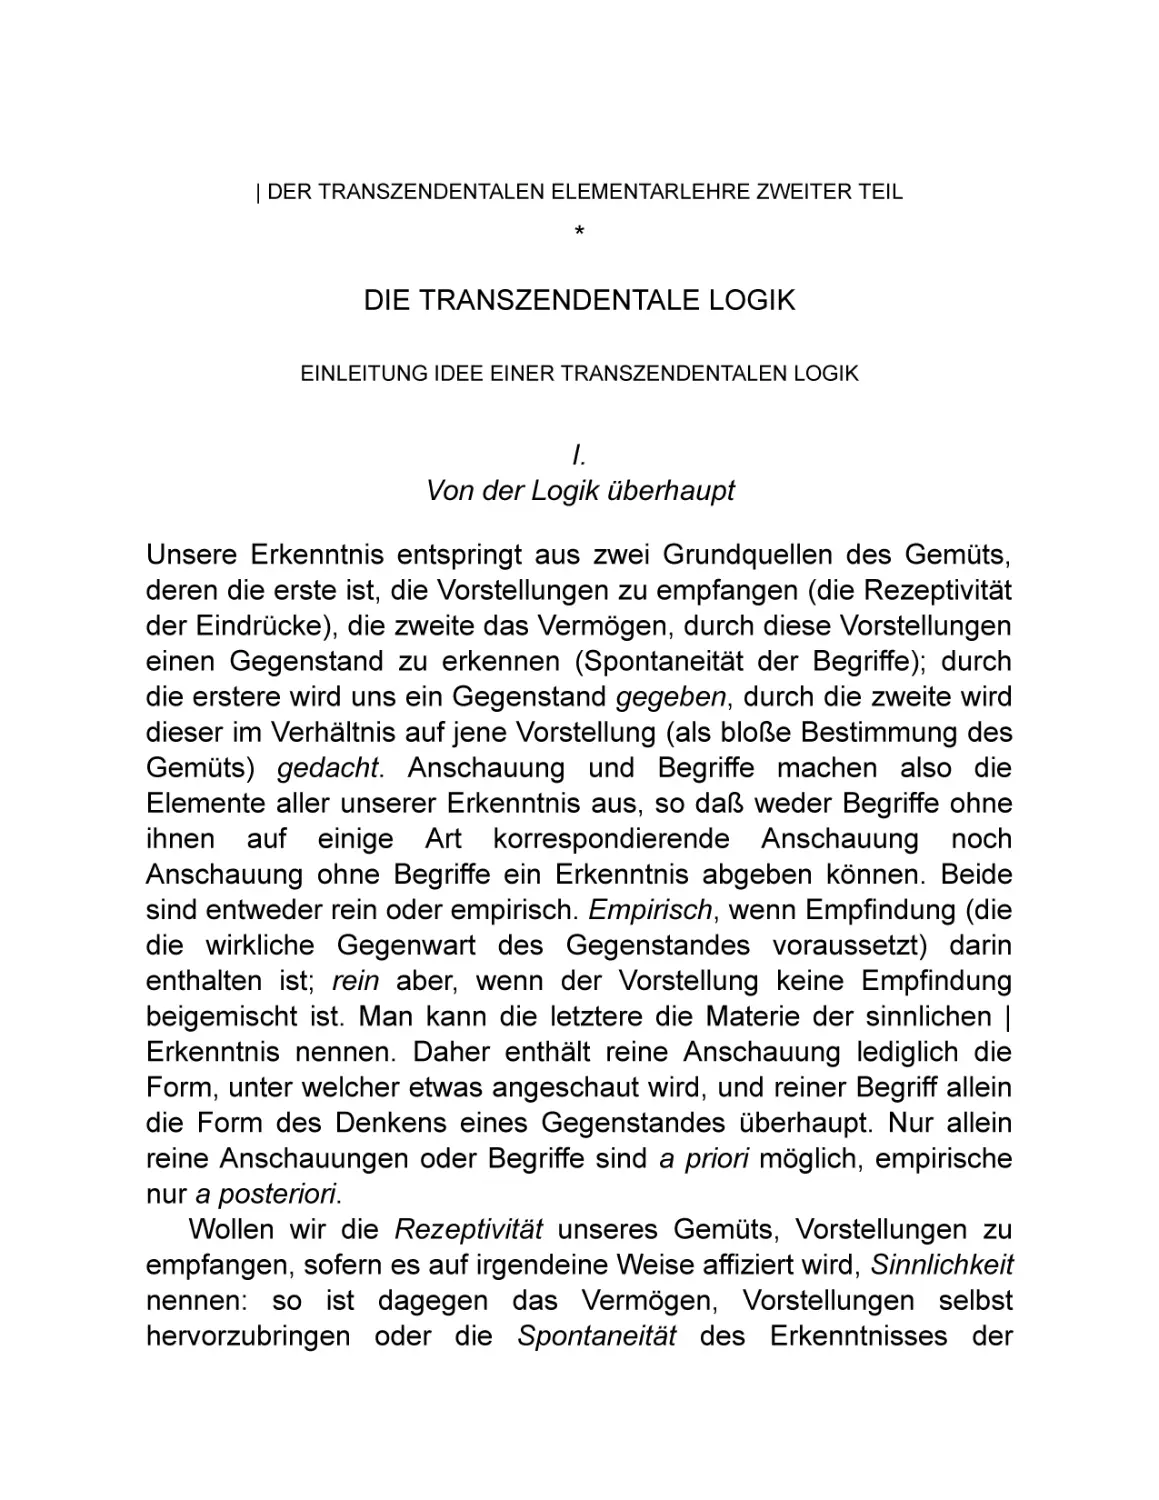 Zweiter Teil. Die transzendentale Logik
Einleitung. Idee einer transzendentalen Logik
I. Von der Logik überhaupt |